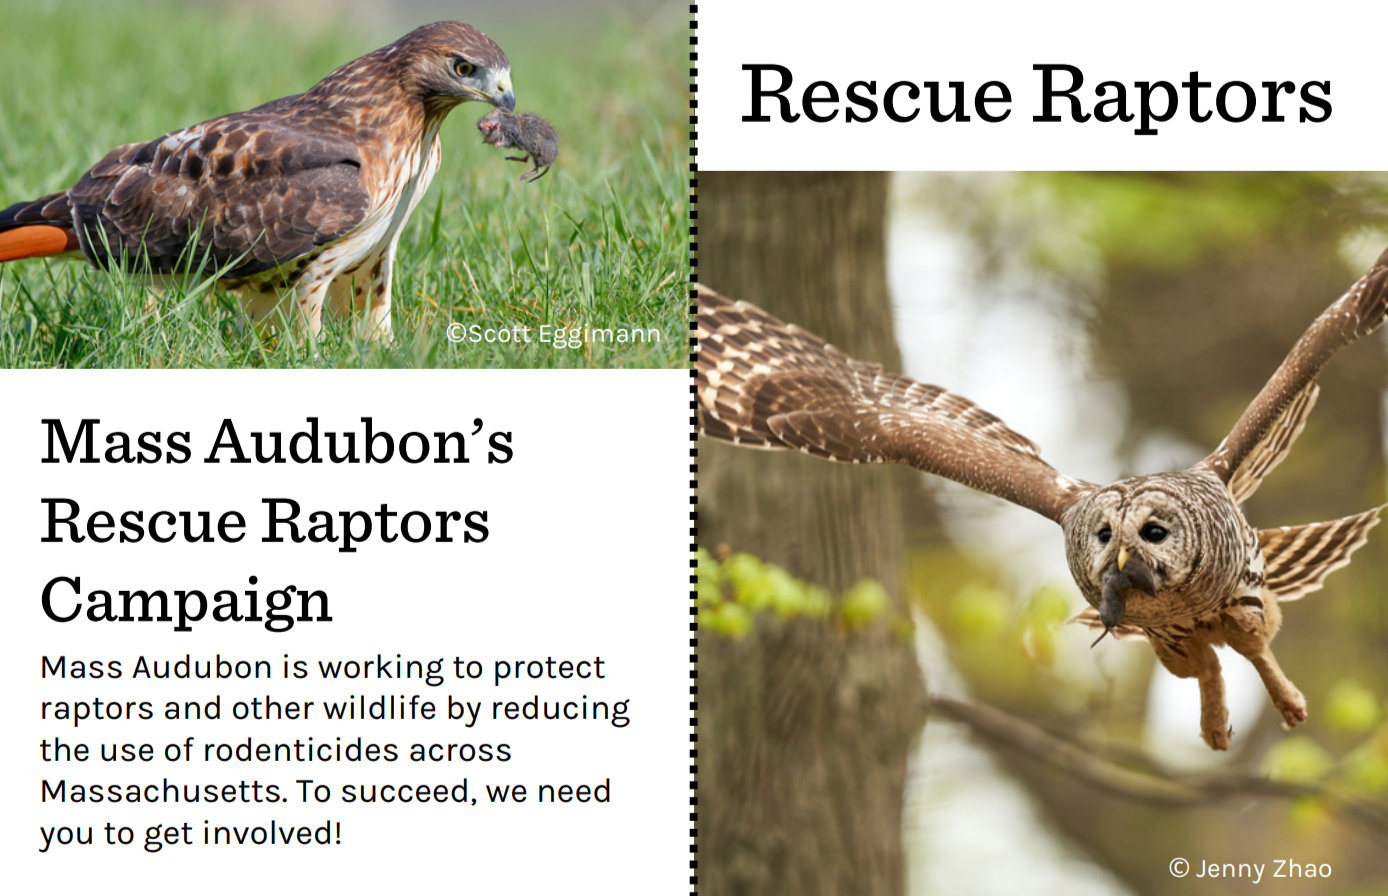 A brochure about Mass Audubon's Rescue Raptors Campaign